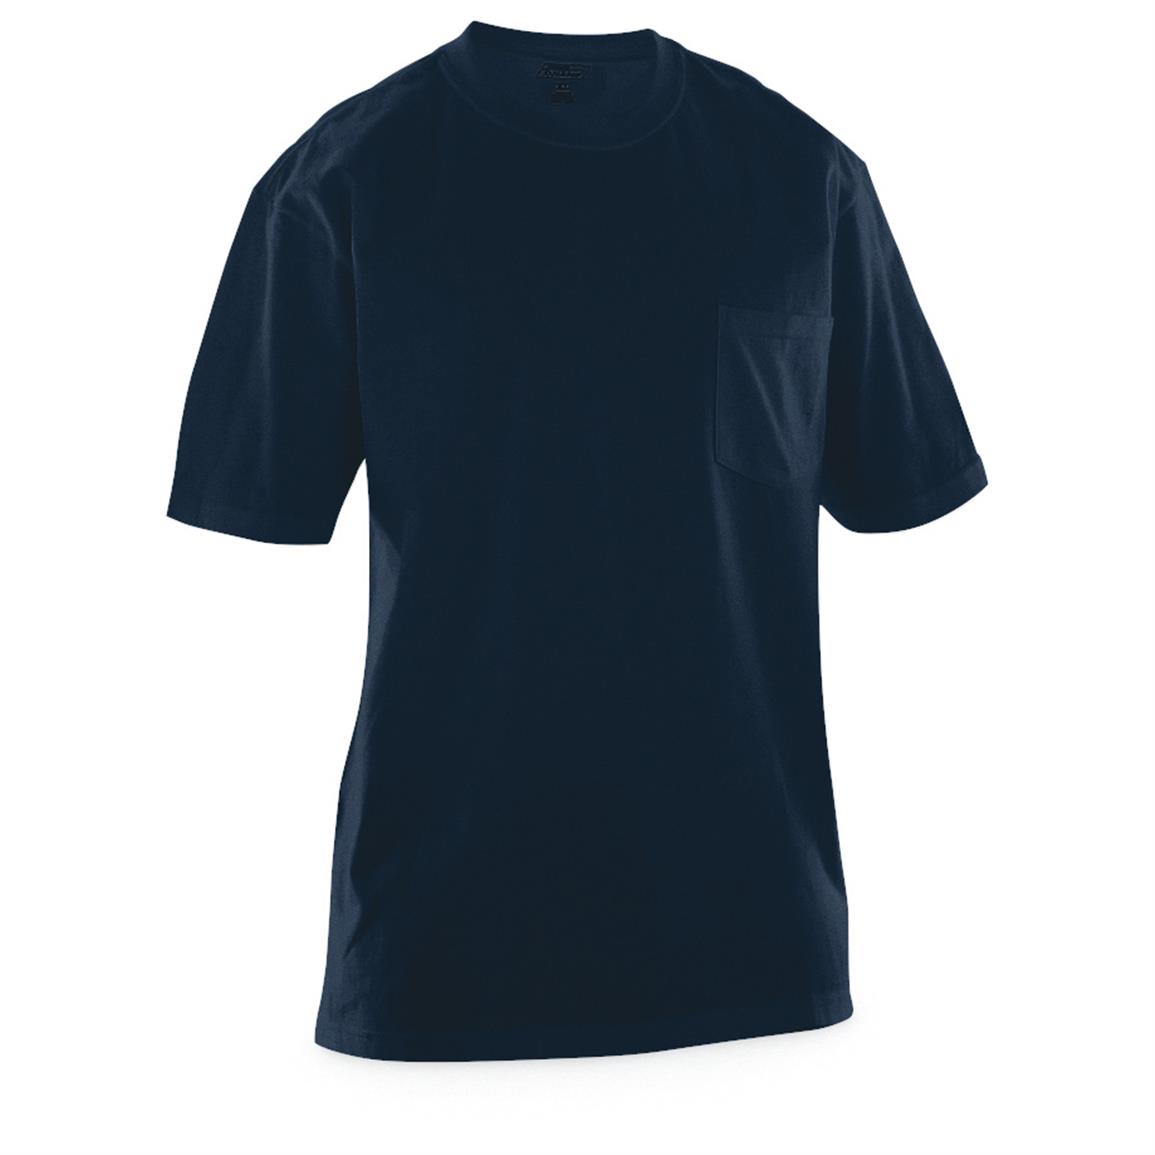 Dickies Men's Irregular Pocket T-Shirts, 4 Pack - 637837, T-Shirts at ...